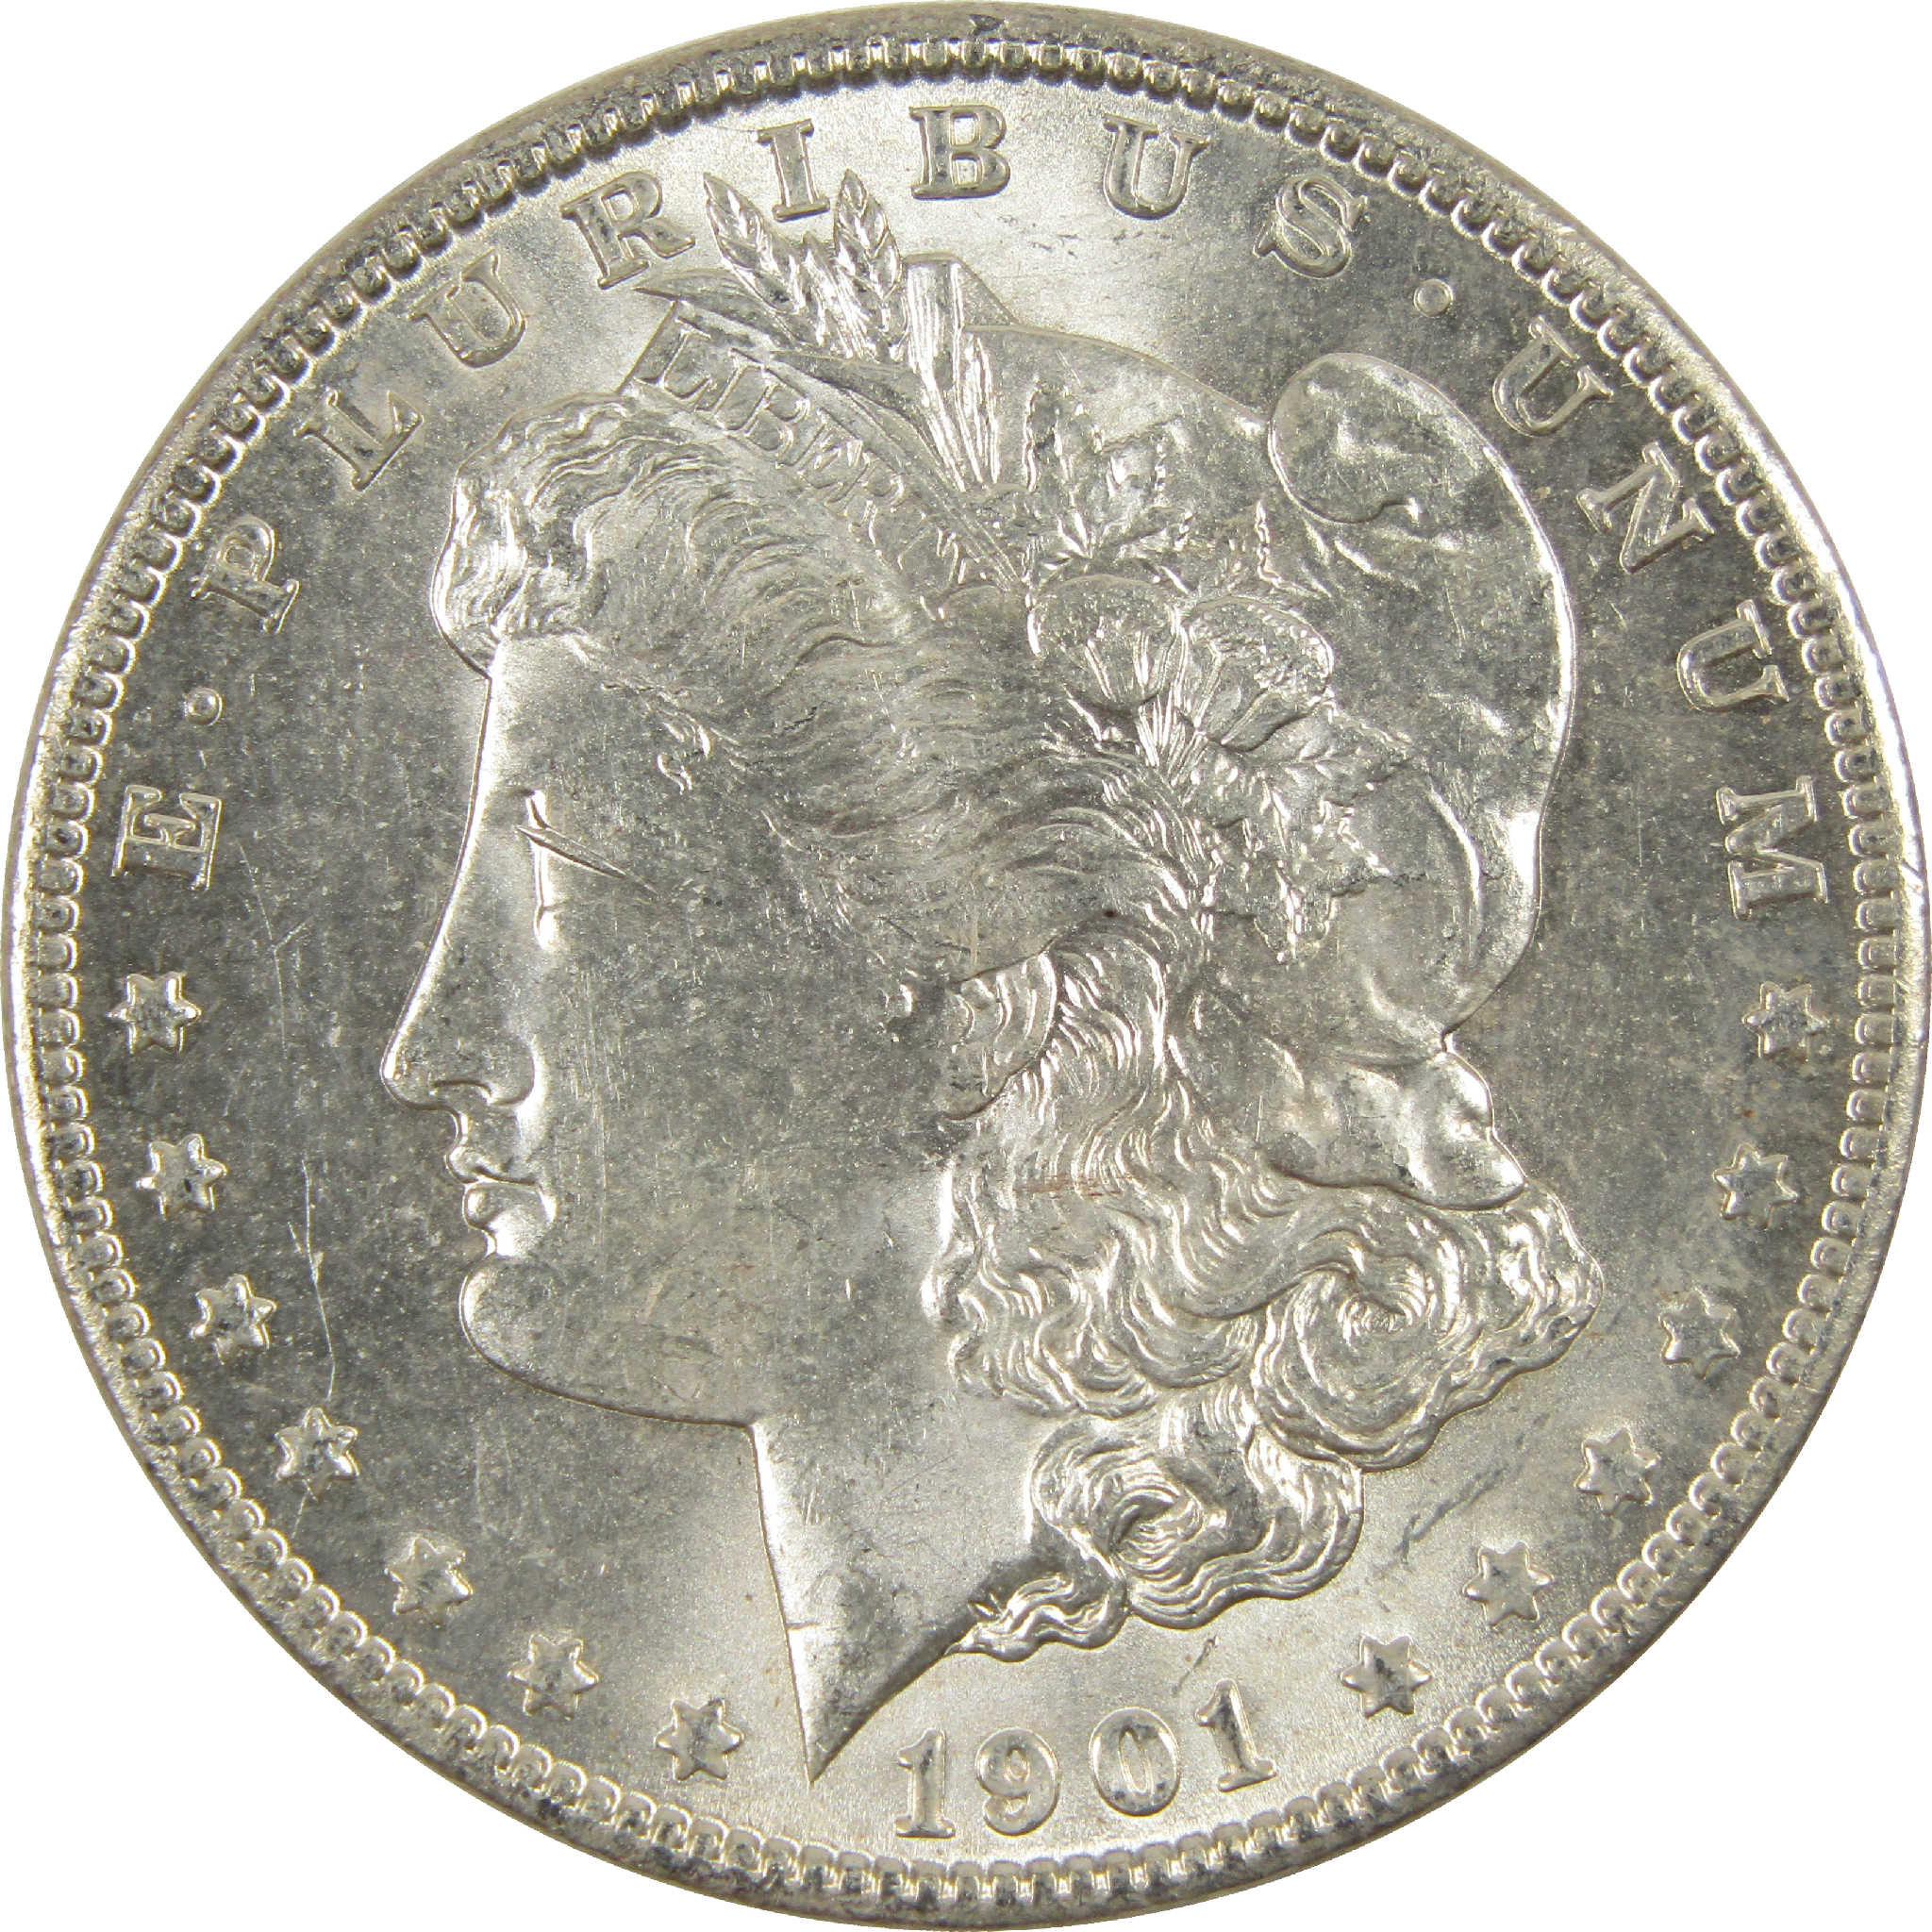 1901 O Morgan Dollar CH AU Choice About Uncirculated Silver $1 Coin - Morgan coin - Morgan silver dollar - Morgan silver dollar for sale - Profile Coins &amp; Collectibles